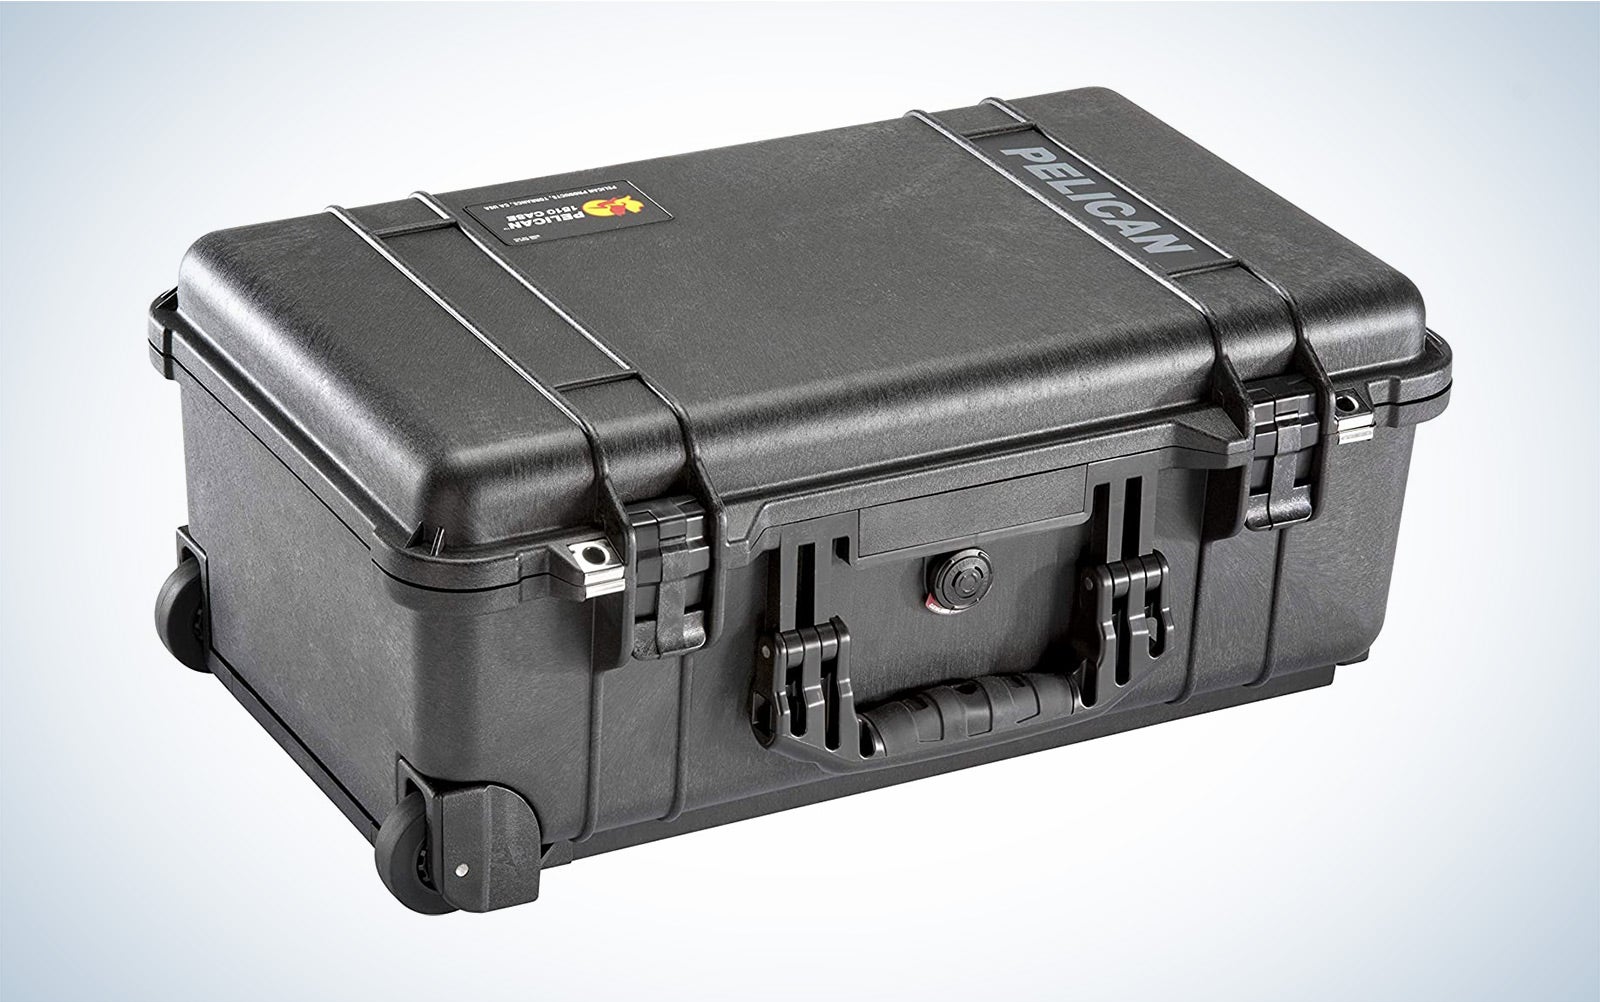 鹈鹕1510随身相机包是最好的防水硬盒相机设备。